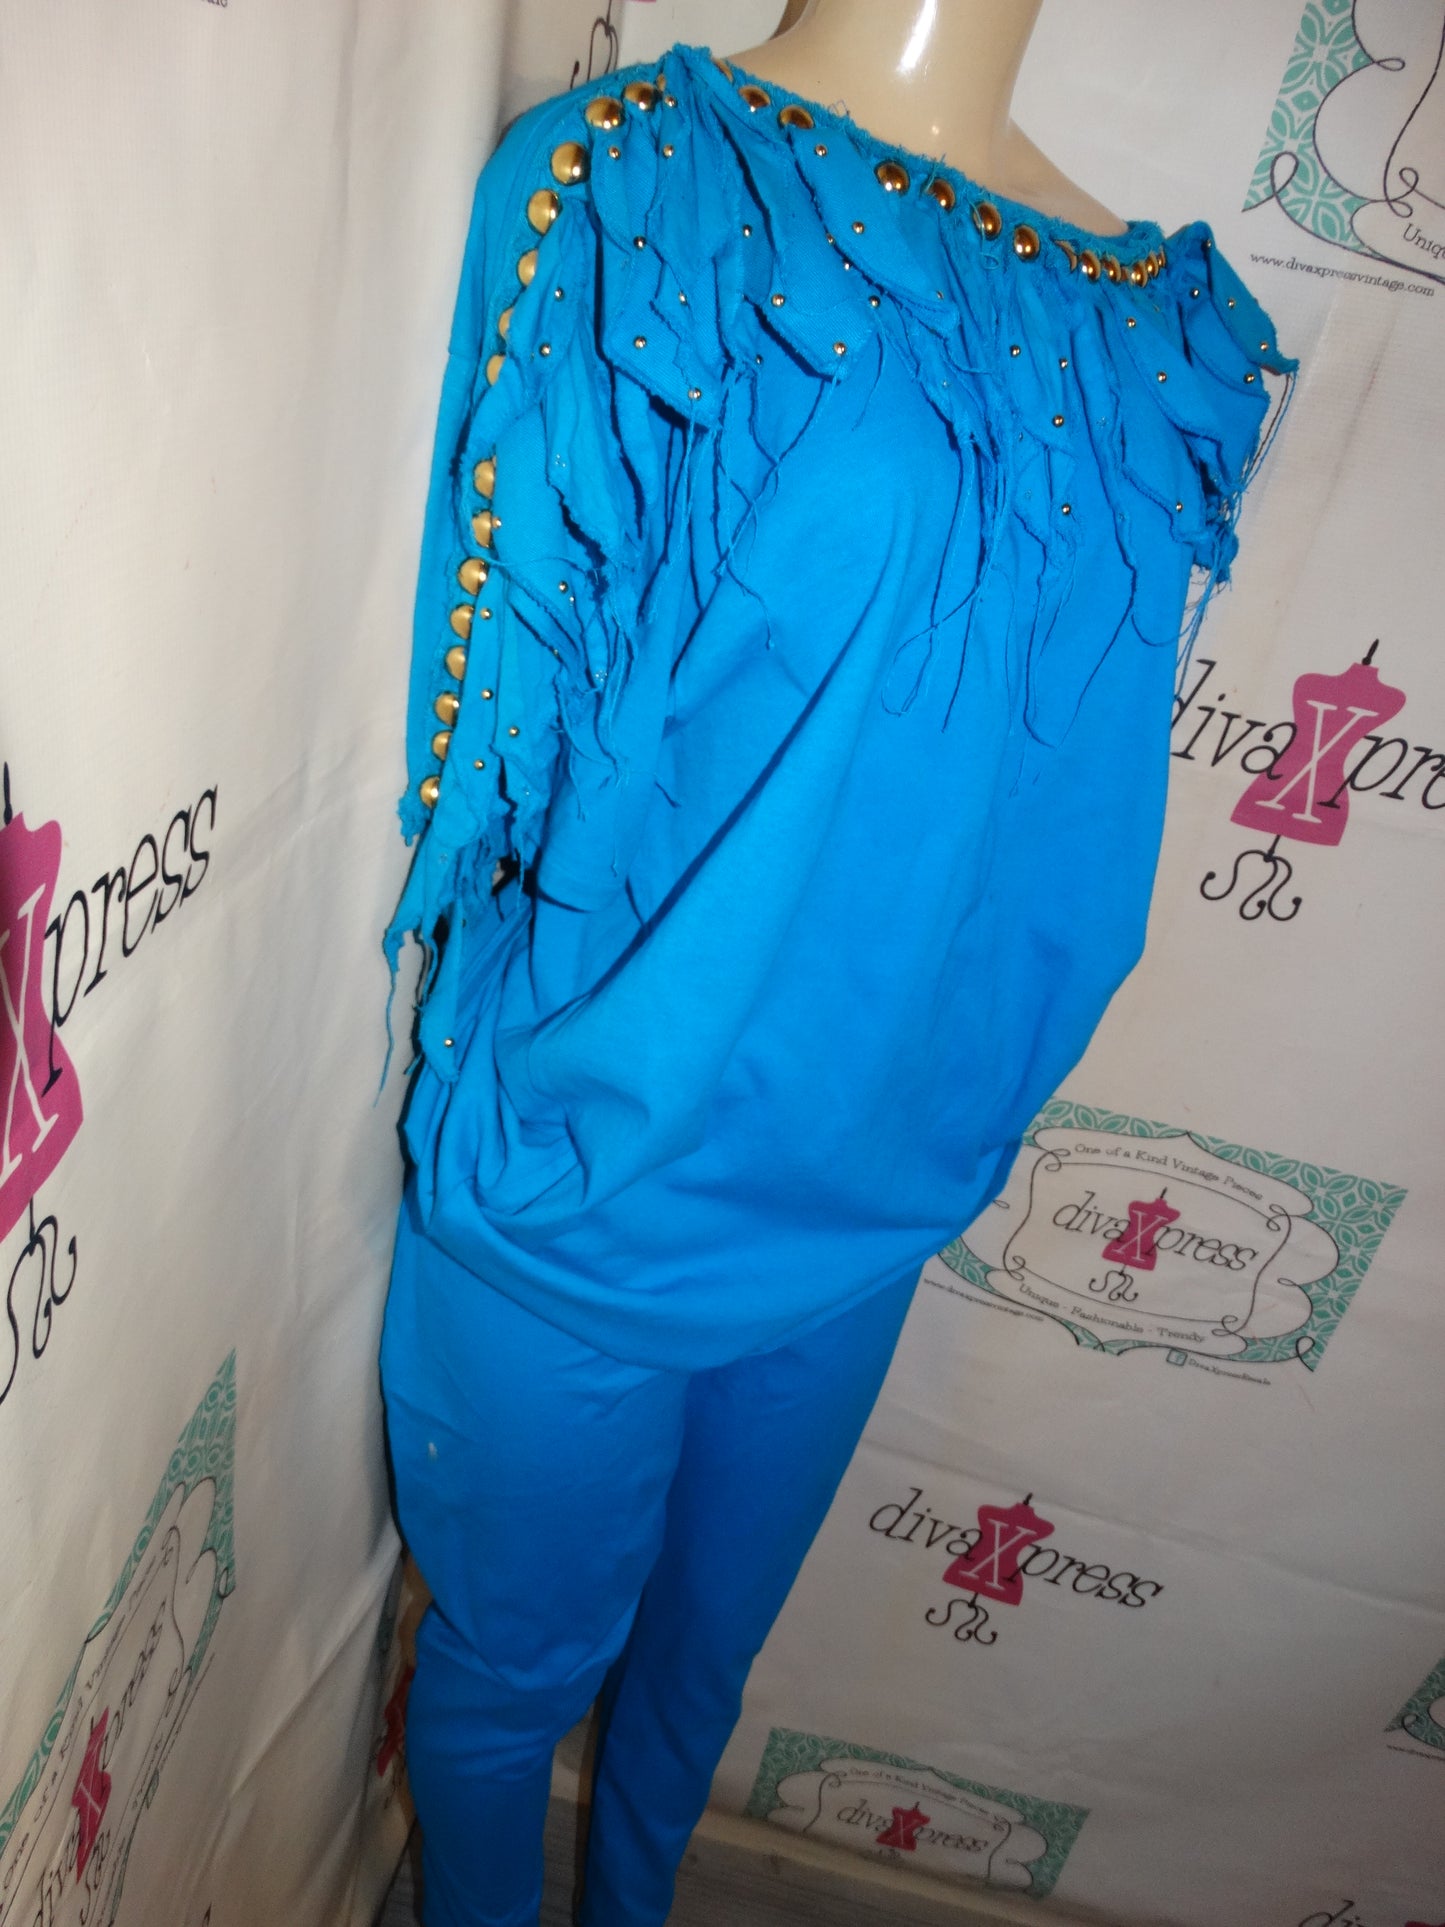 Vintage Risky Blue beaded Shingle 2 piece Pants Set Size XL